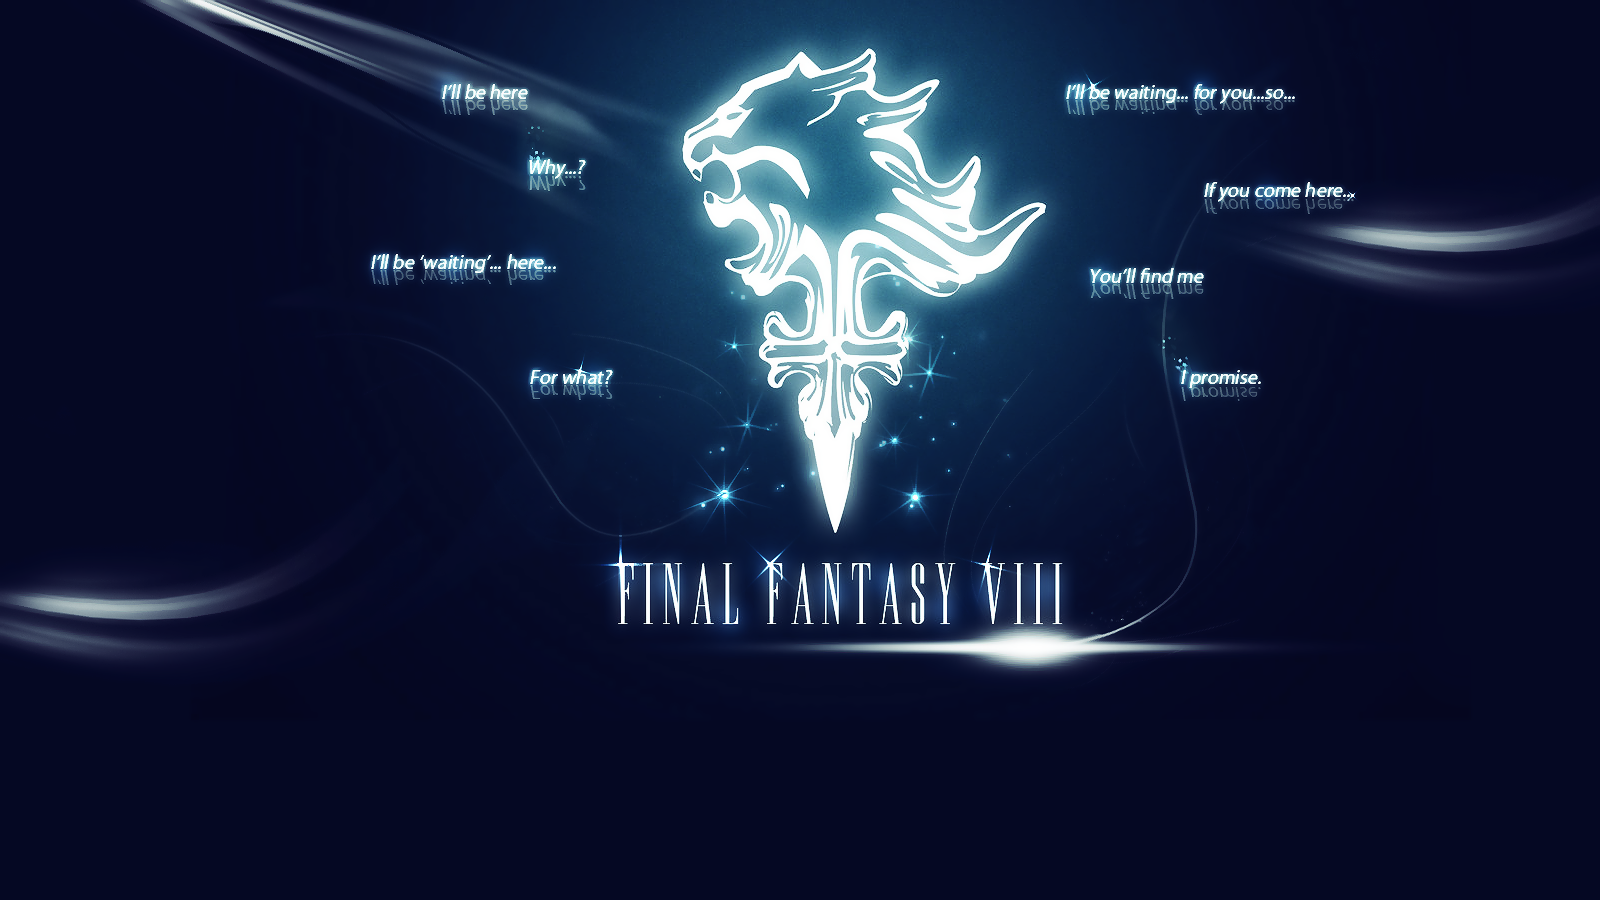 Wallpaper Final Fantasy Viii By Arcaste Fan Art Games